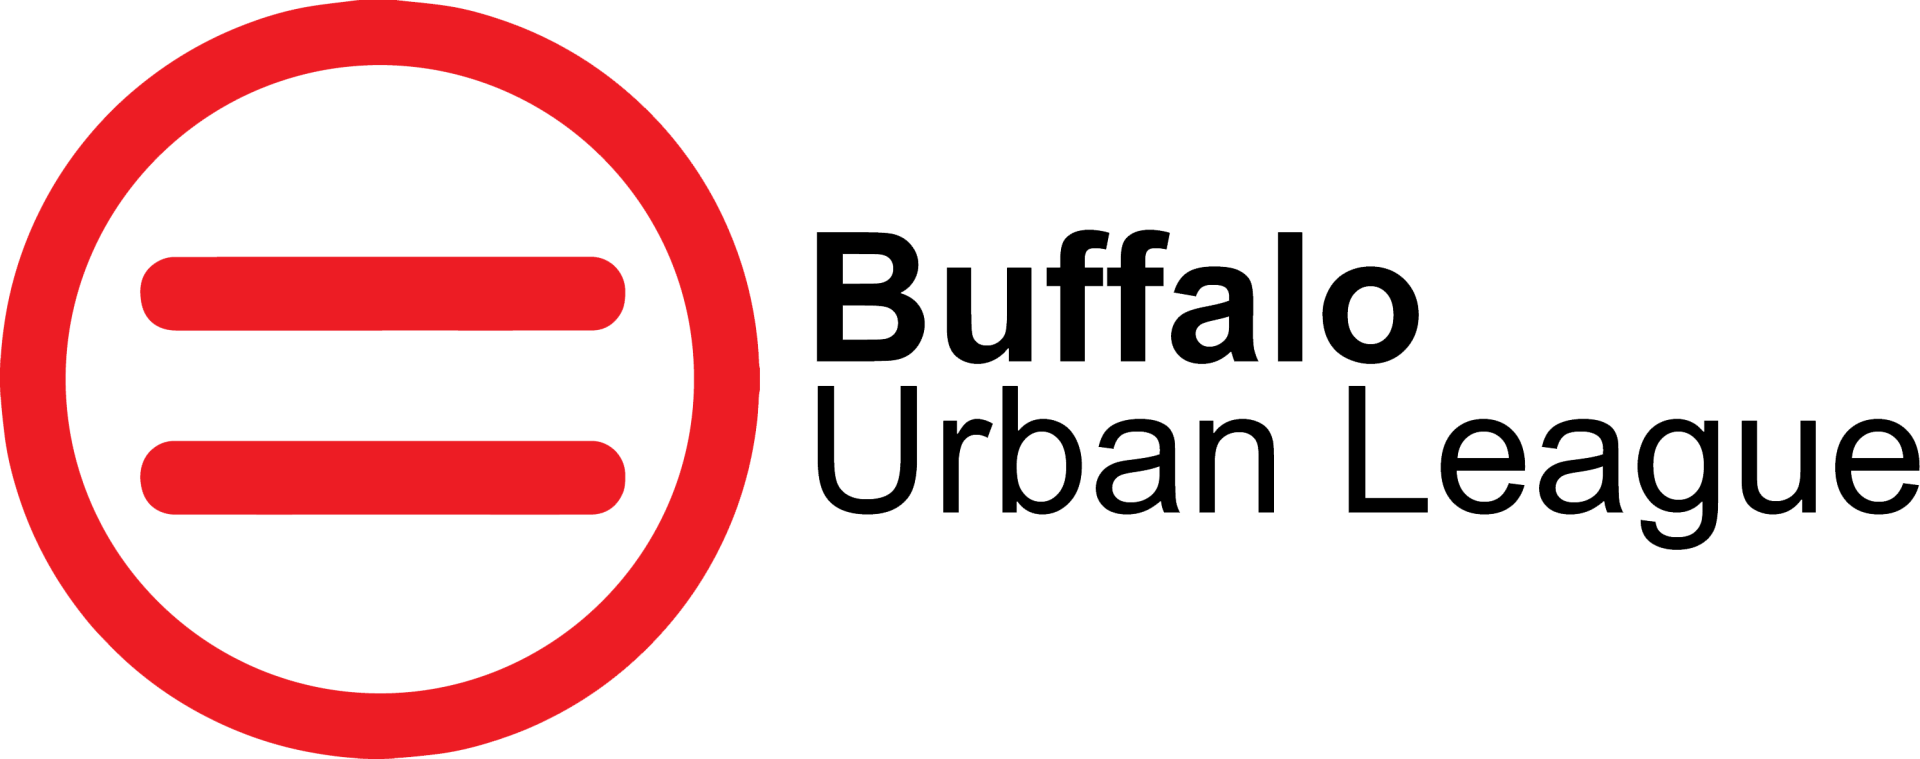 Buffalo Urban League logo